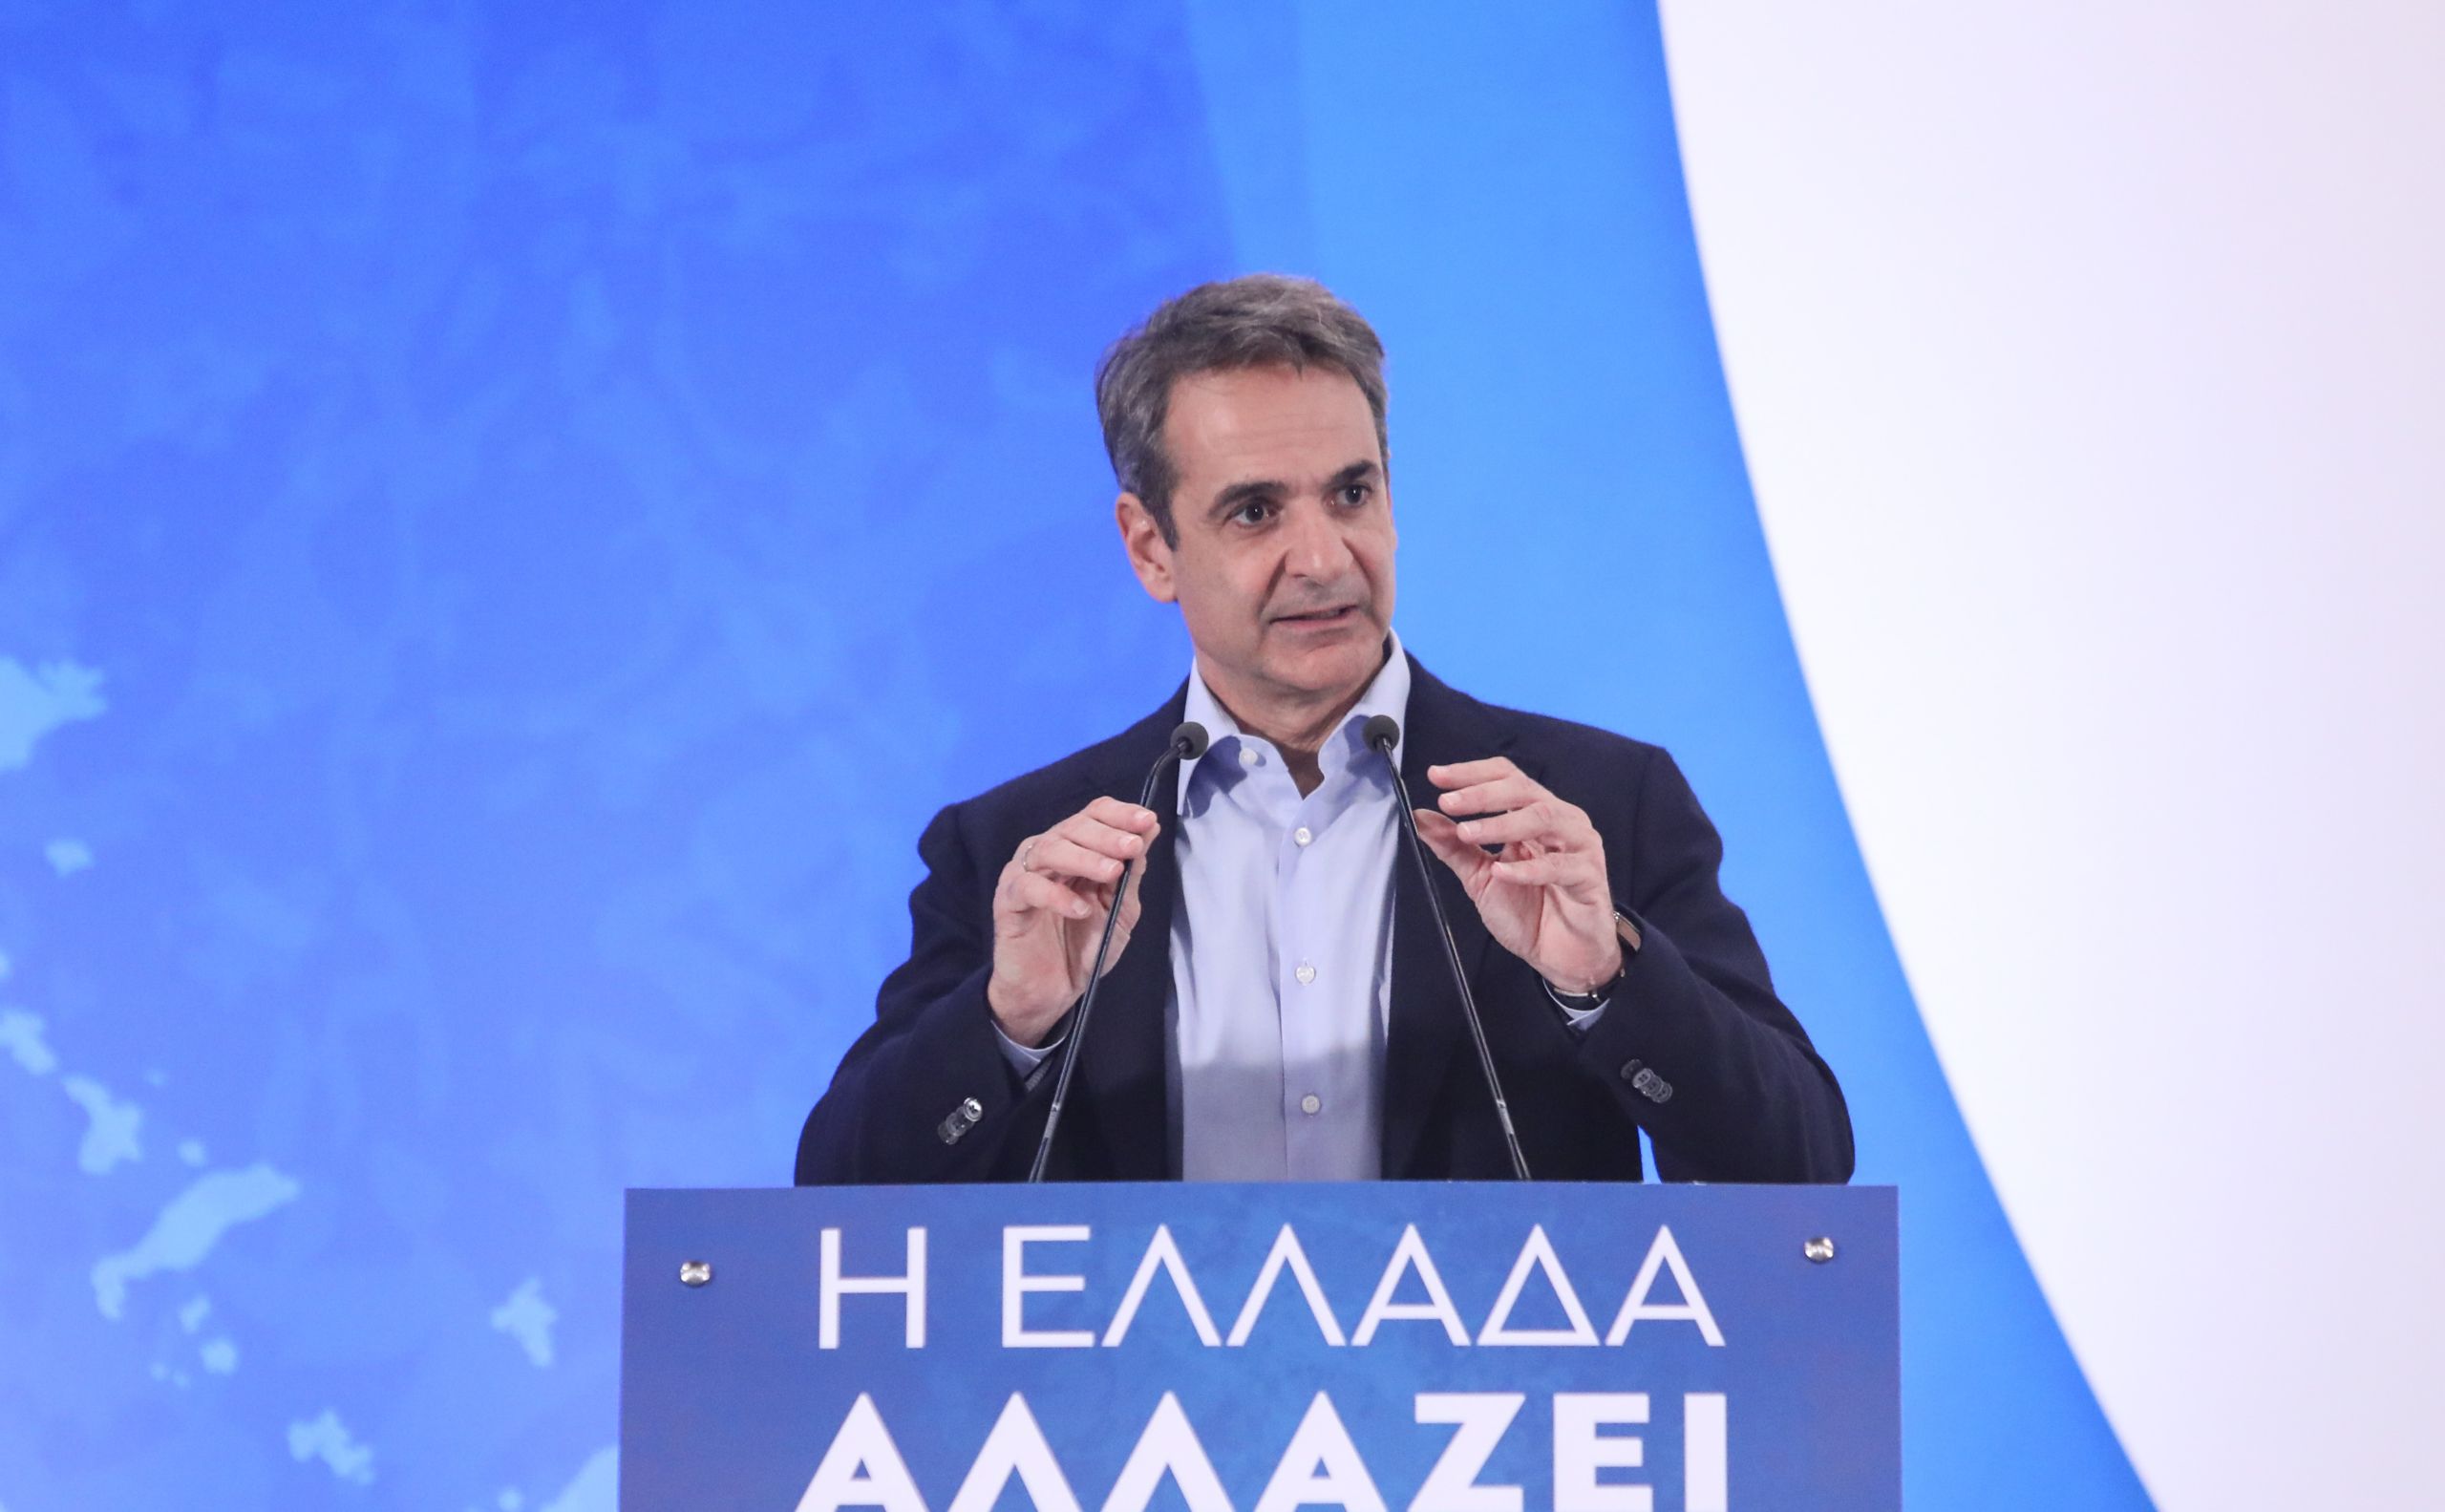 Μητσοτάκης: Το Eurogroup αναγνώρισε πανηγυρικά την επιτυχία της ελληνικής οικονομίας